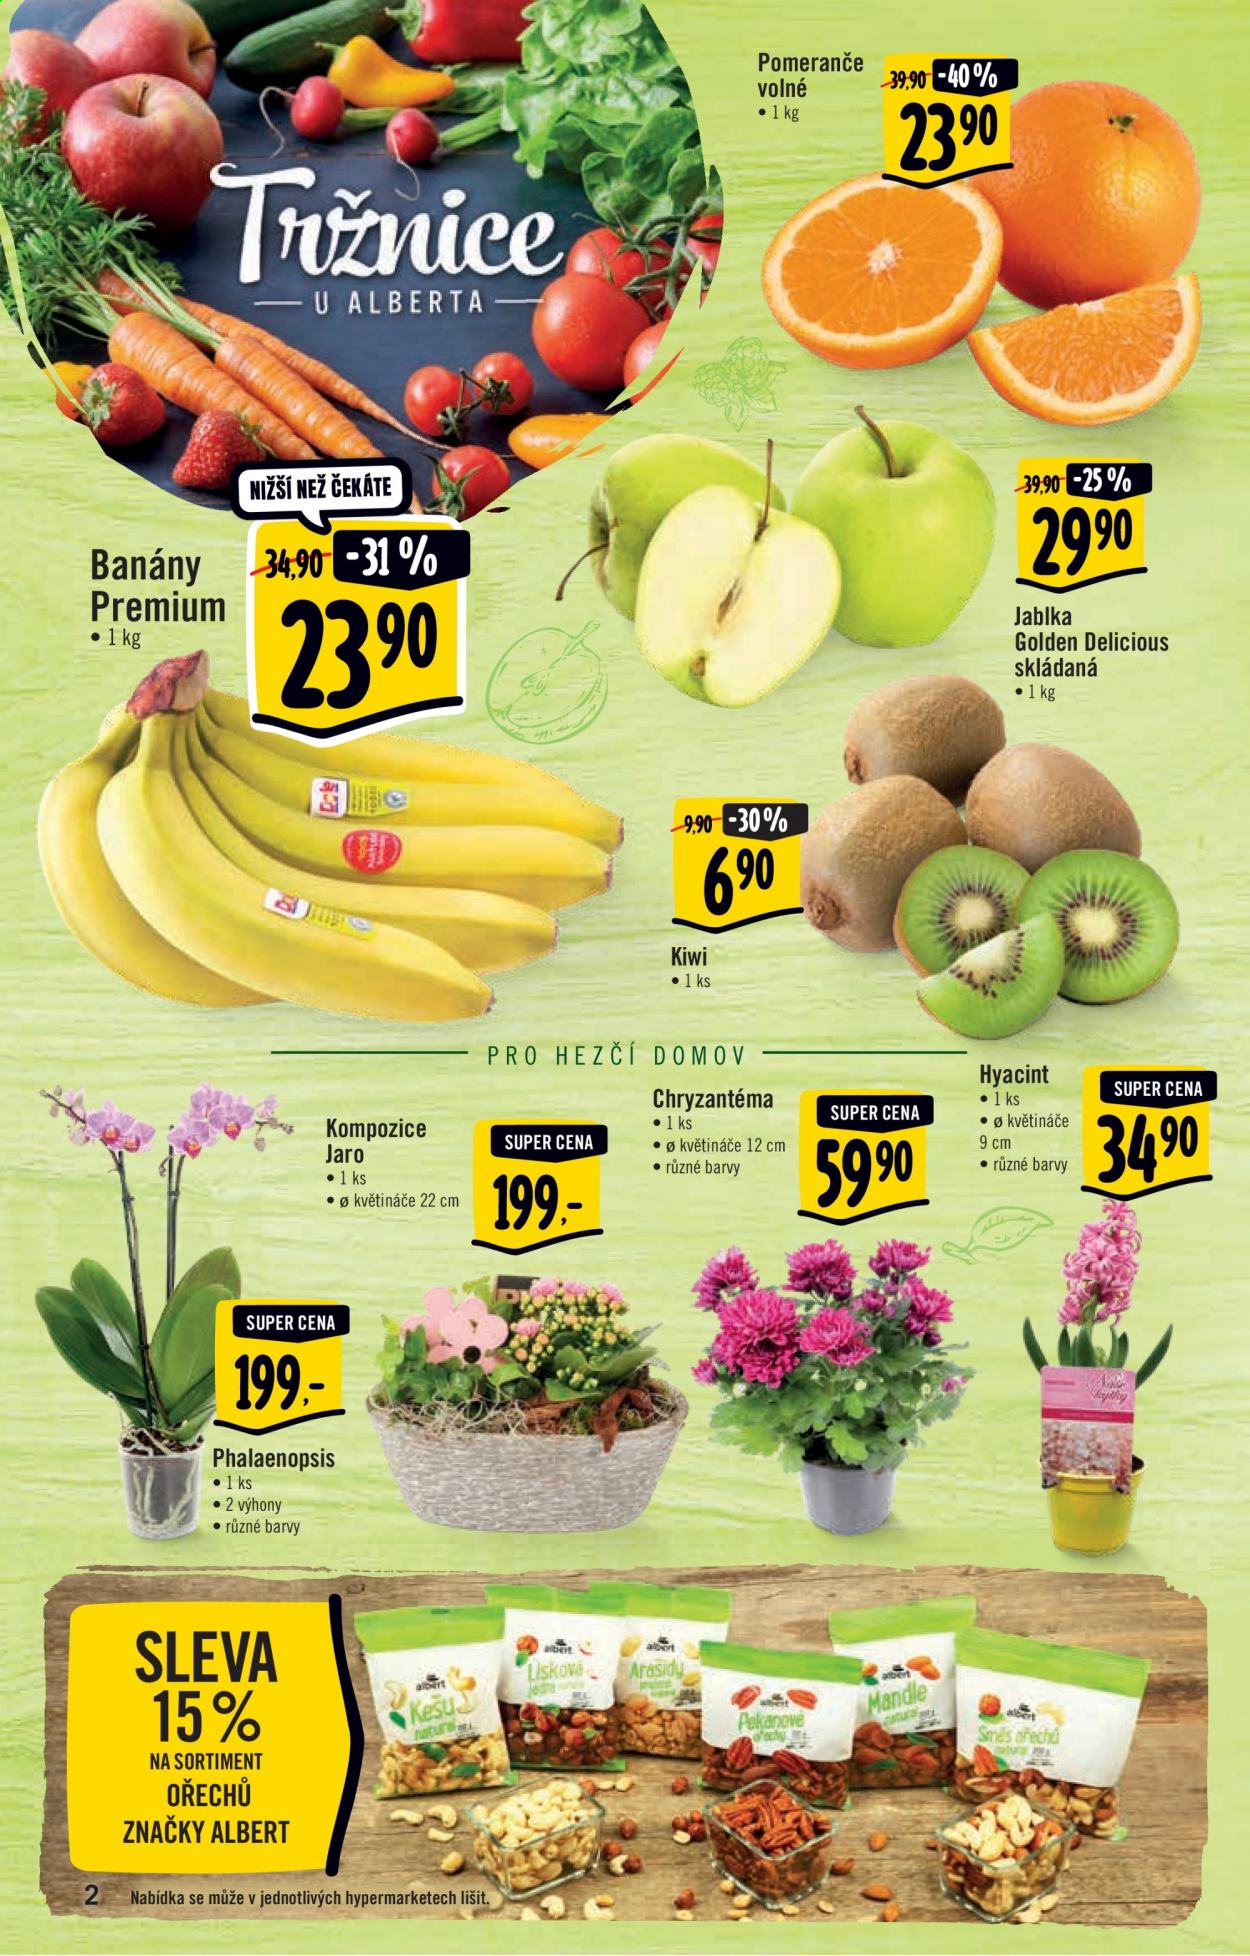 thumbnail - Leták Albert Hypermarket - 24.2.2021 - 2.3.2021 - Produkty v akci - kiwi, banány, jablka, pomeranče, Golden delicious, kešu, arašídy, mandle, chryzantéma, orchidea. Strana 2.